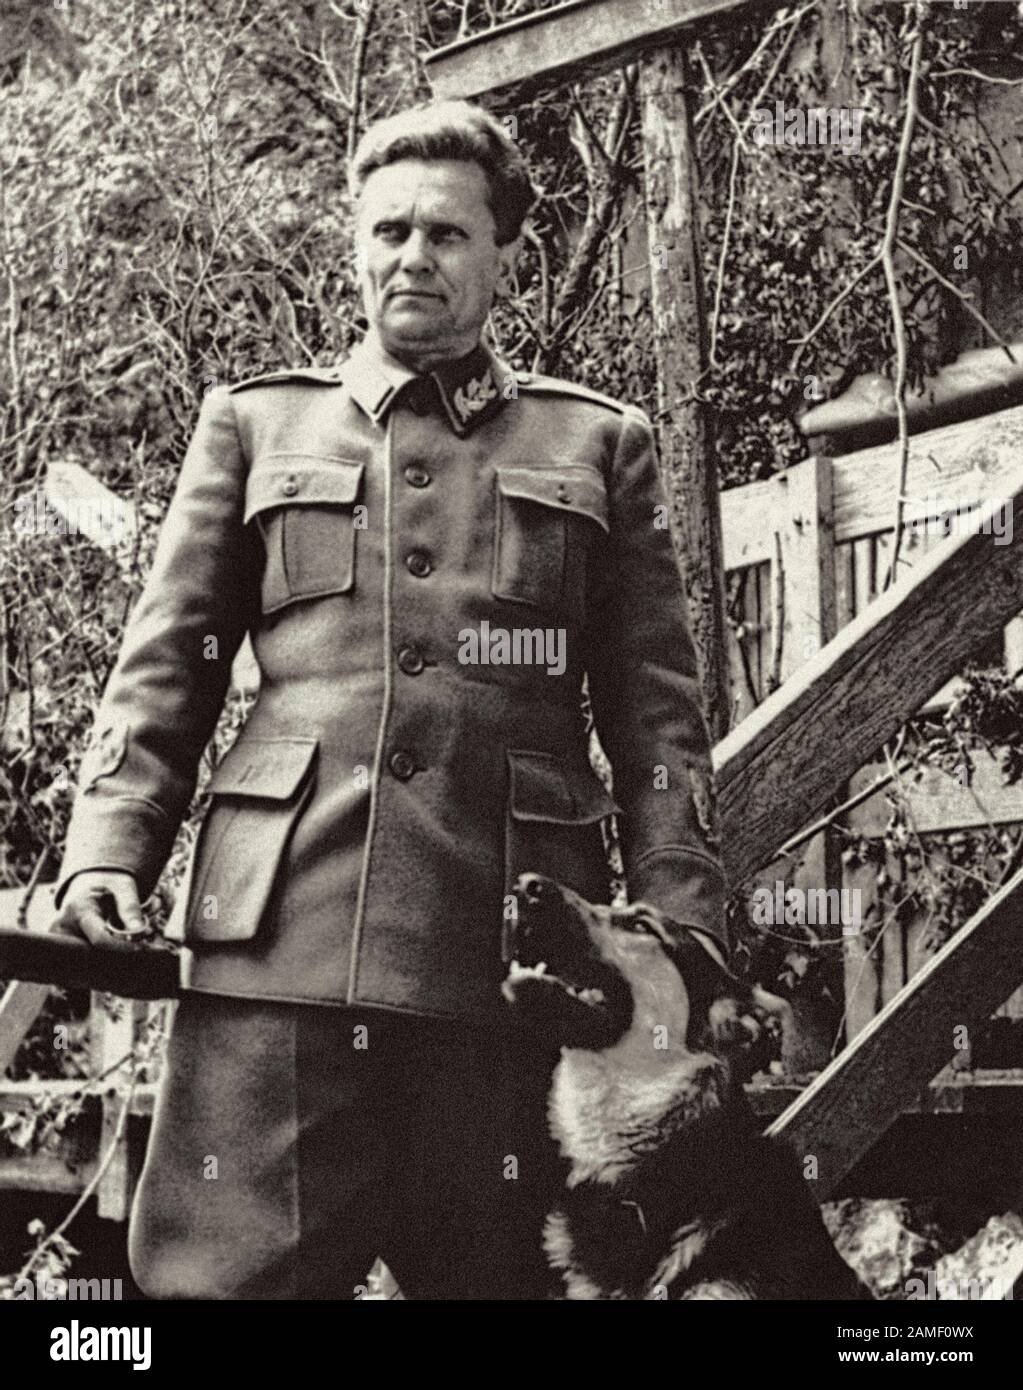 El Mariscal Josip Broz Tito, líder de las fuerzas armadas partidarias de la United Yugosla contra los invasores nazis y sus aliados, plantea con su perro. Foto de stock